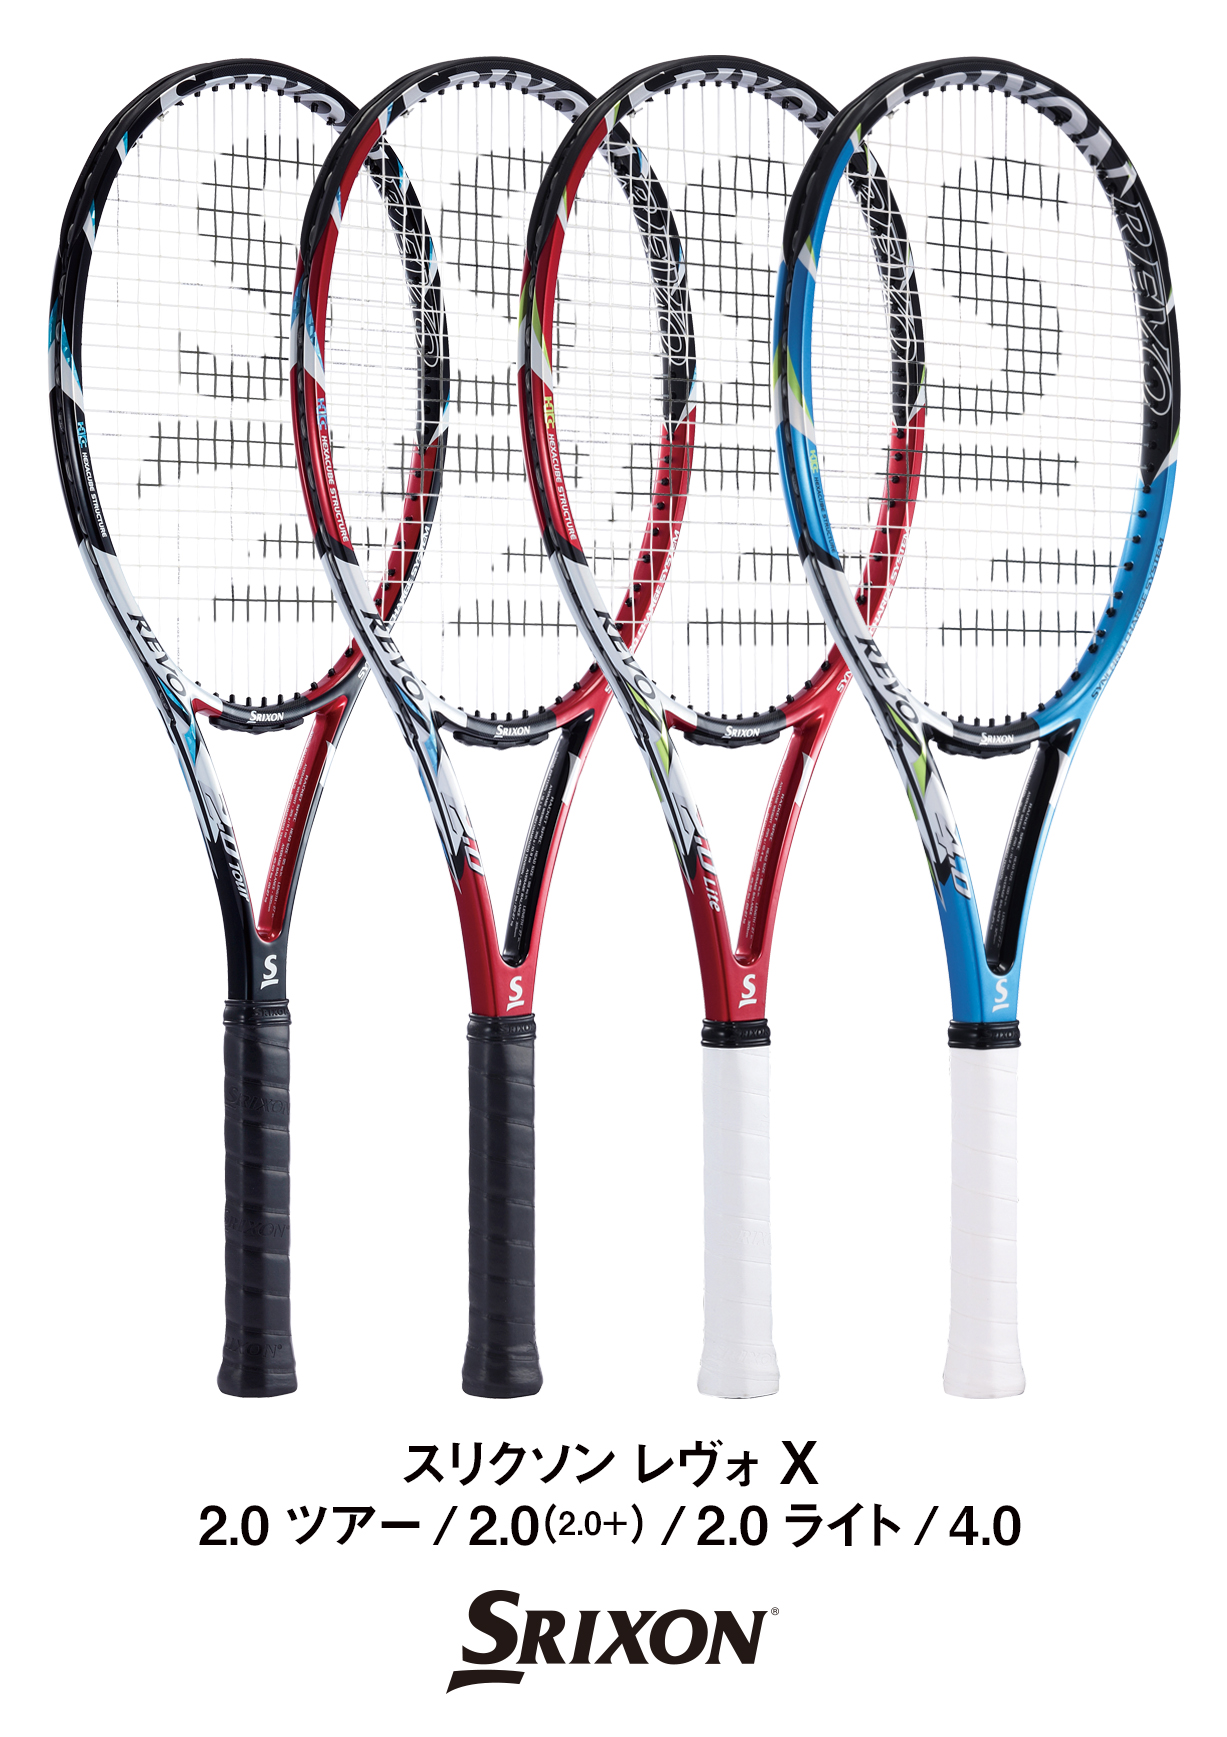 テニスラケット スリクソン レヴォ エックス 2.0 ツアー 2013年モデル